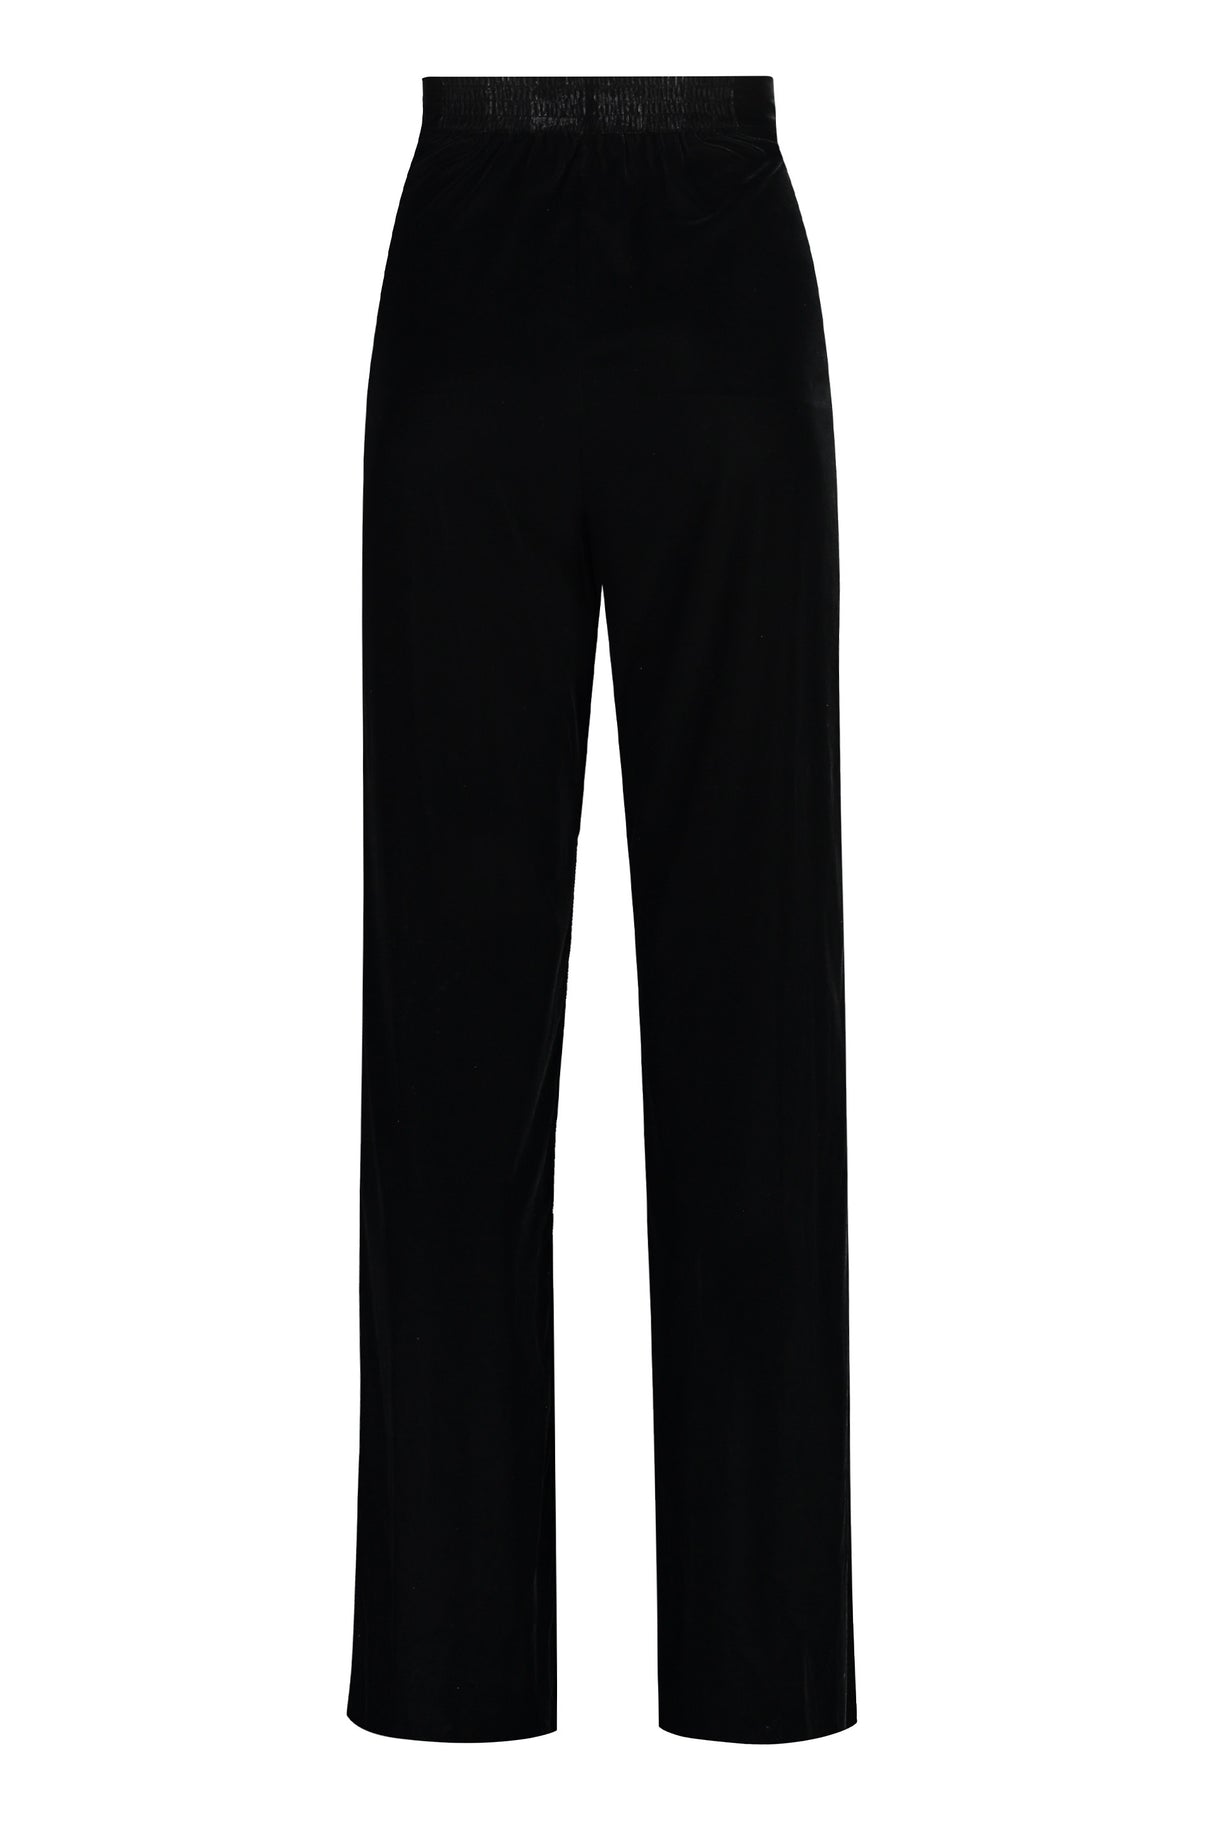 ETRO Elegant Black Velvet Trousers for Women - FW23